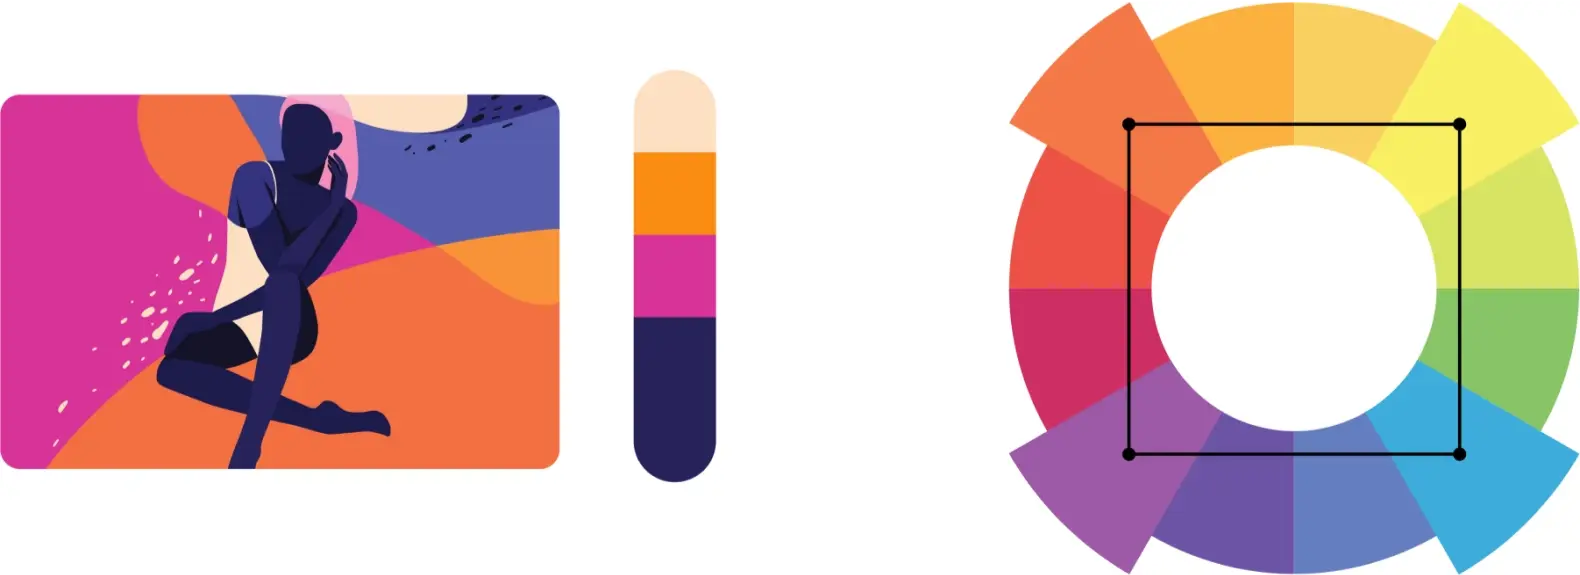 Exemple de palette de couleurs créée à l’aide de quatre couleurs tétradiques sur la roulette de couleurs.